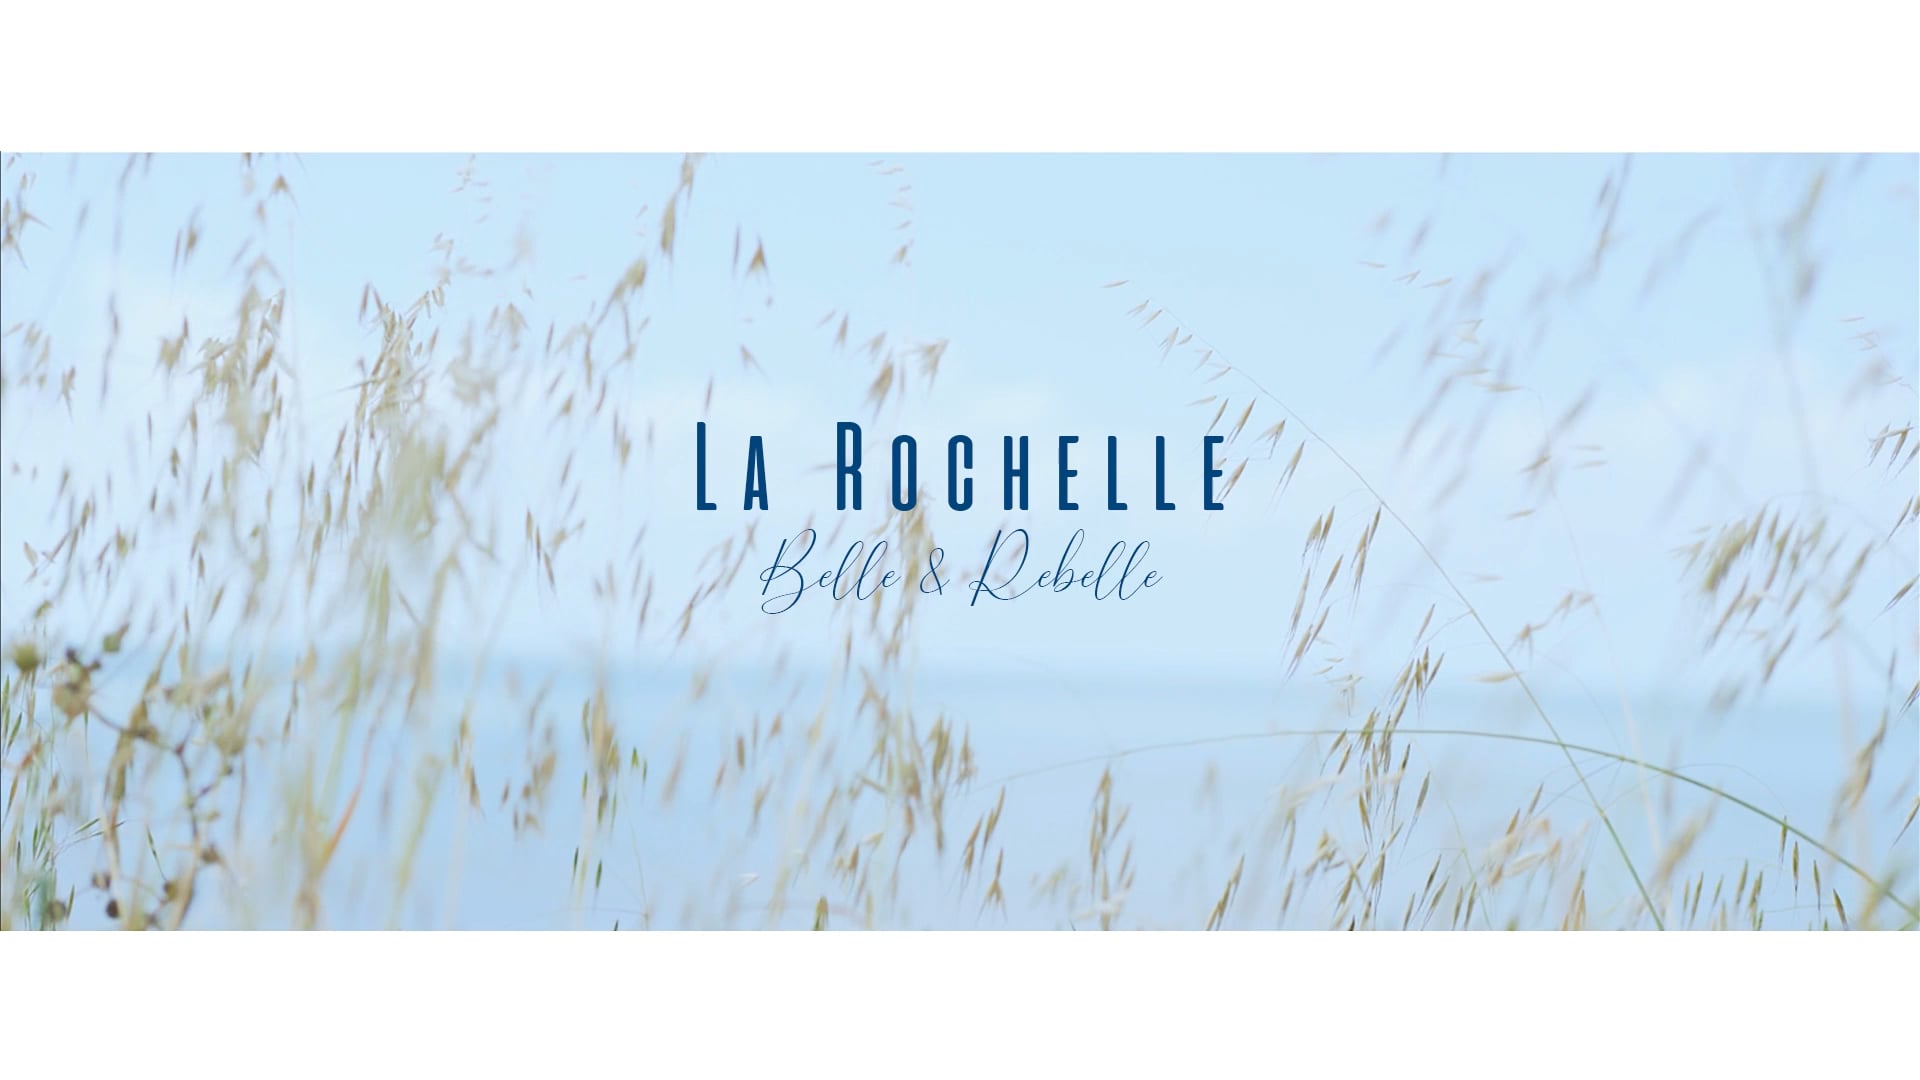 La Rochelle Belle et Rebelle